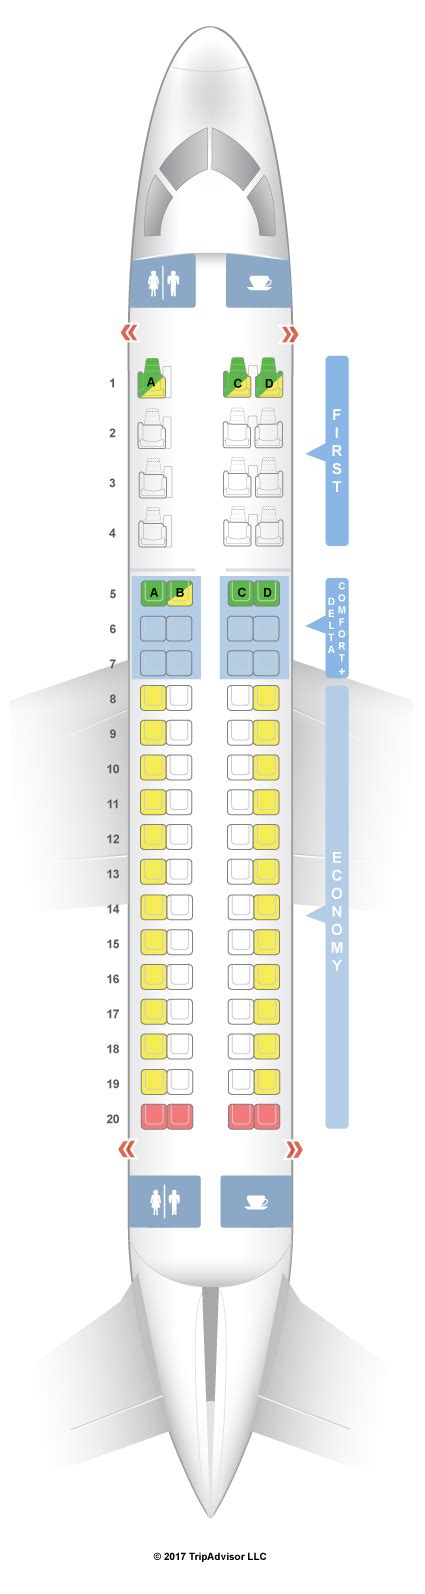 Seatguru Seat Map Delta Embraer E E